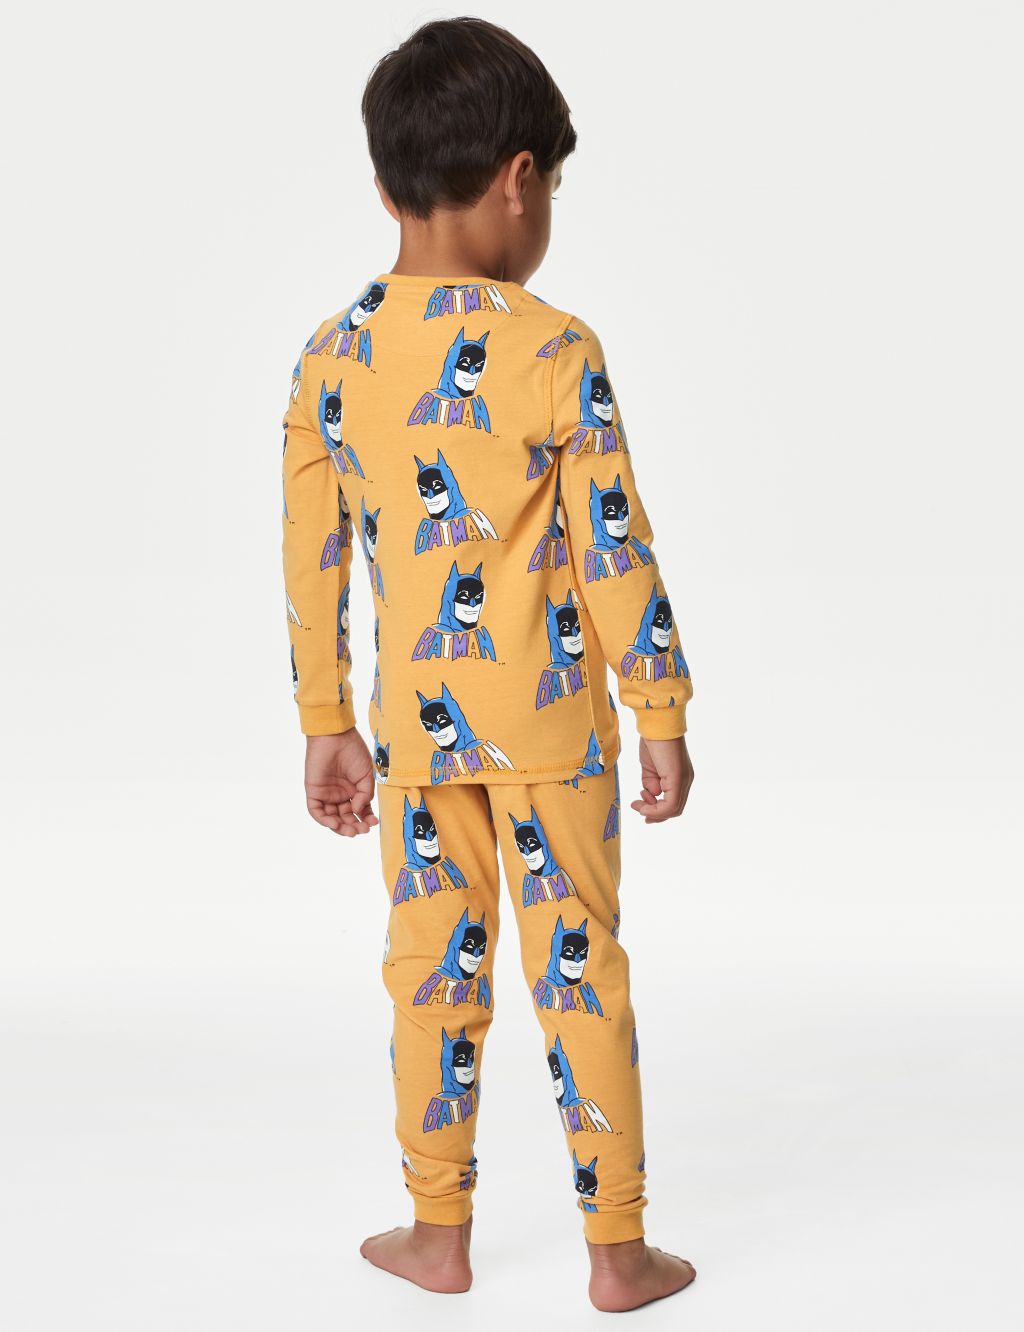 Batman™ Pyjamas (3-12 Yrs) image 3